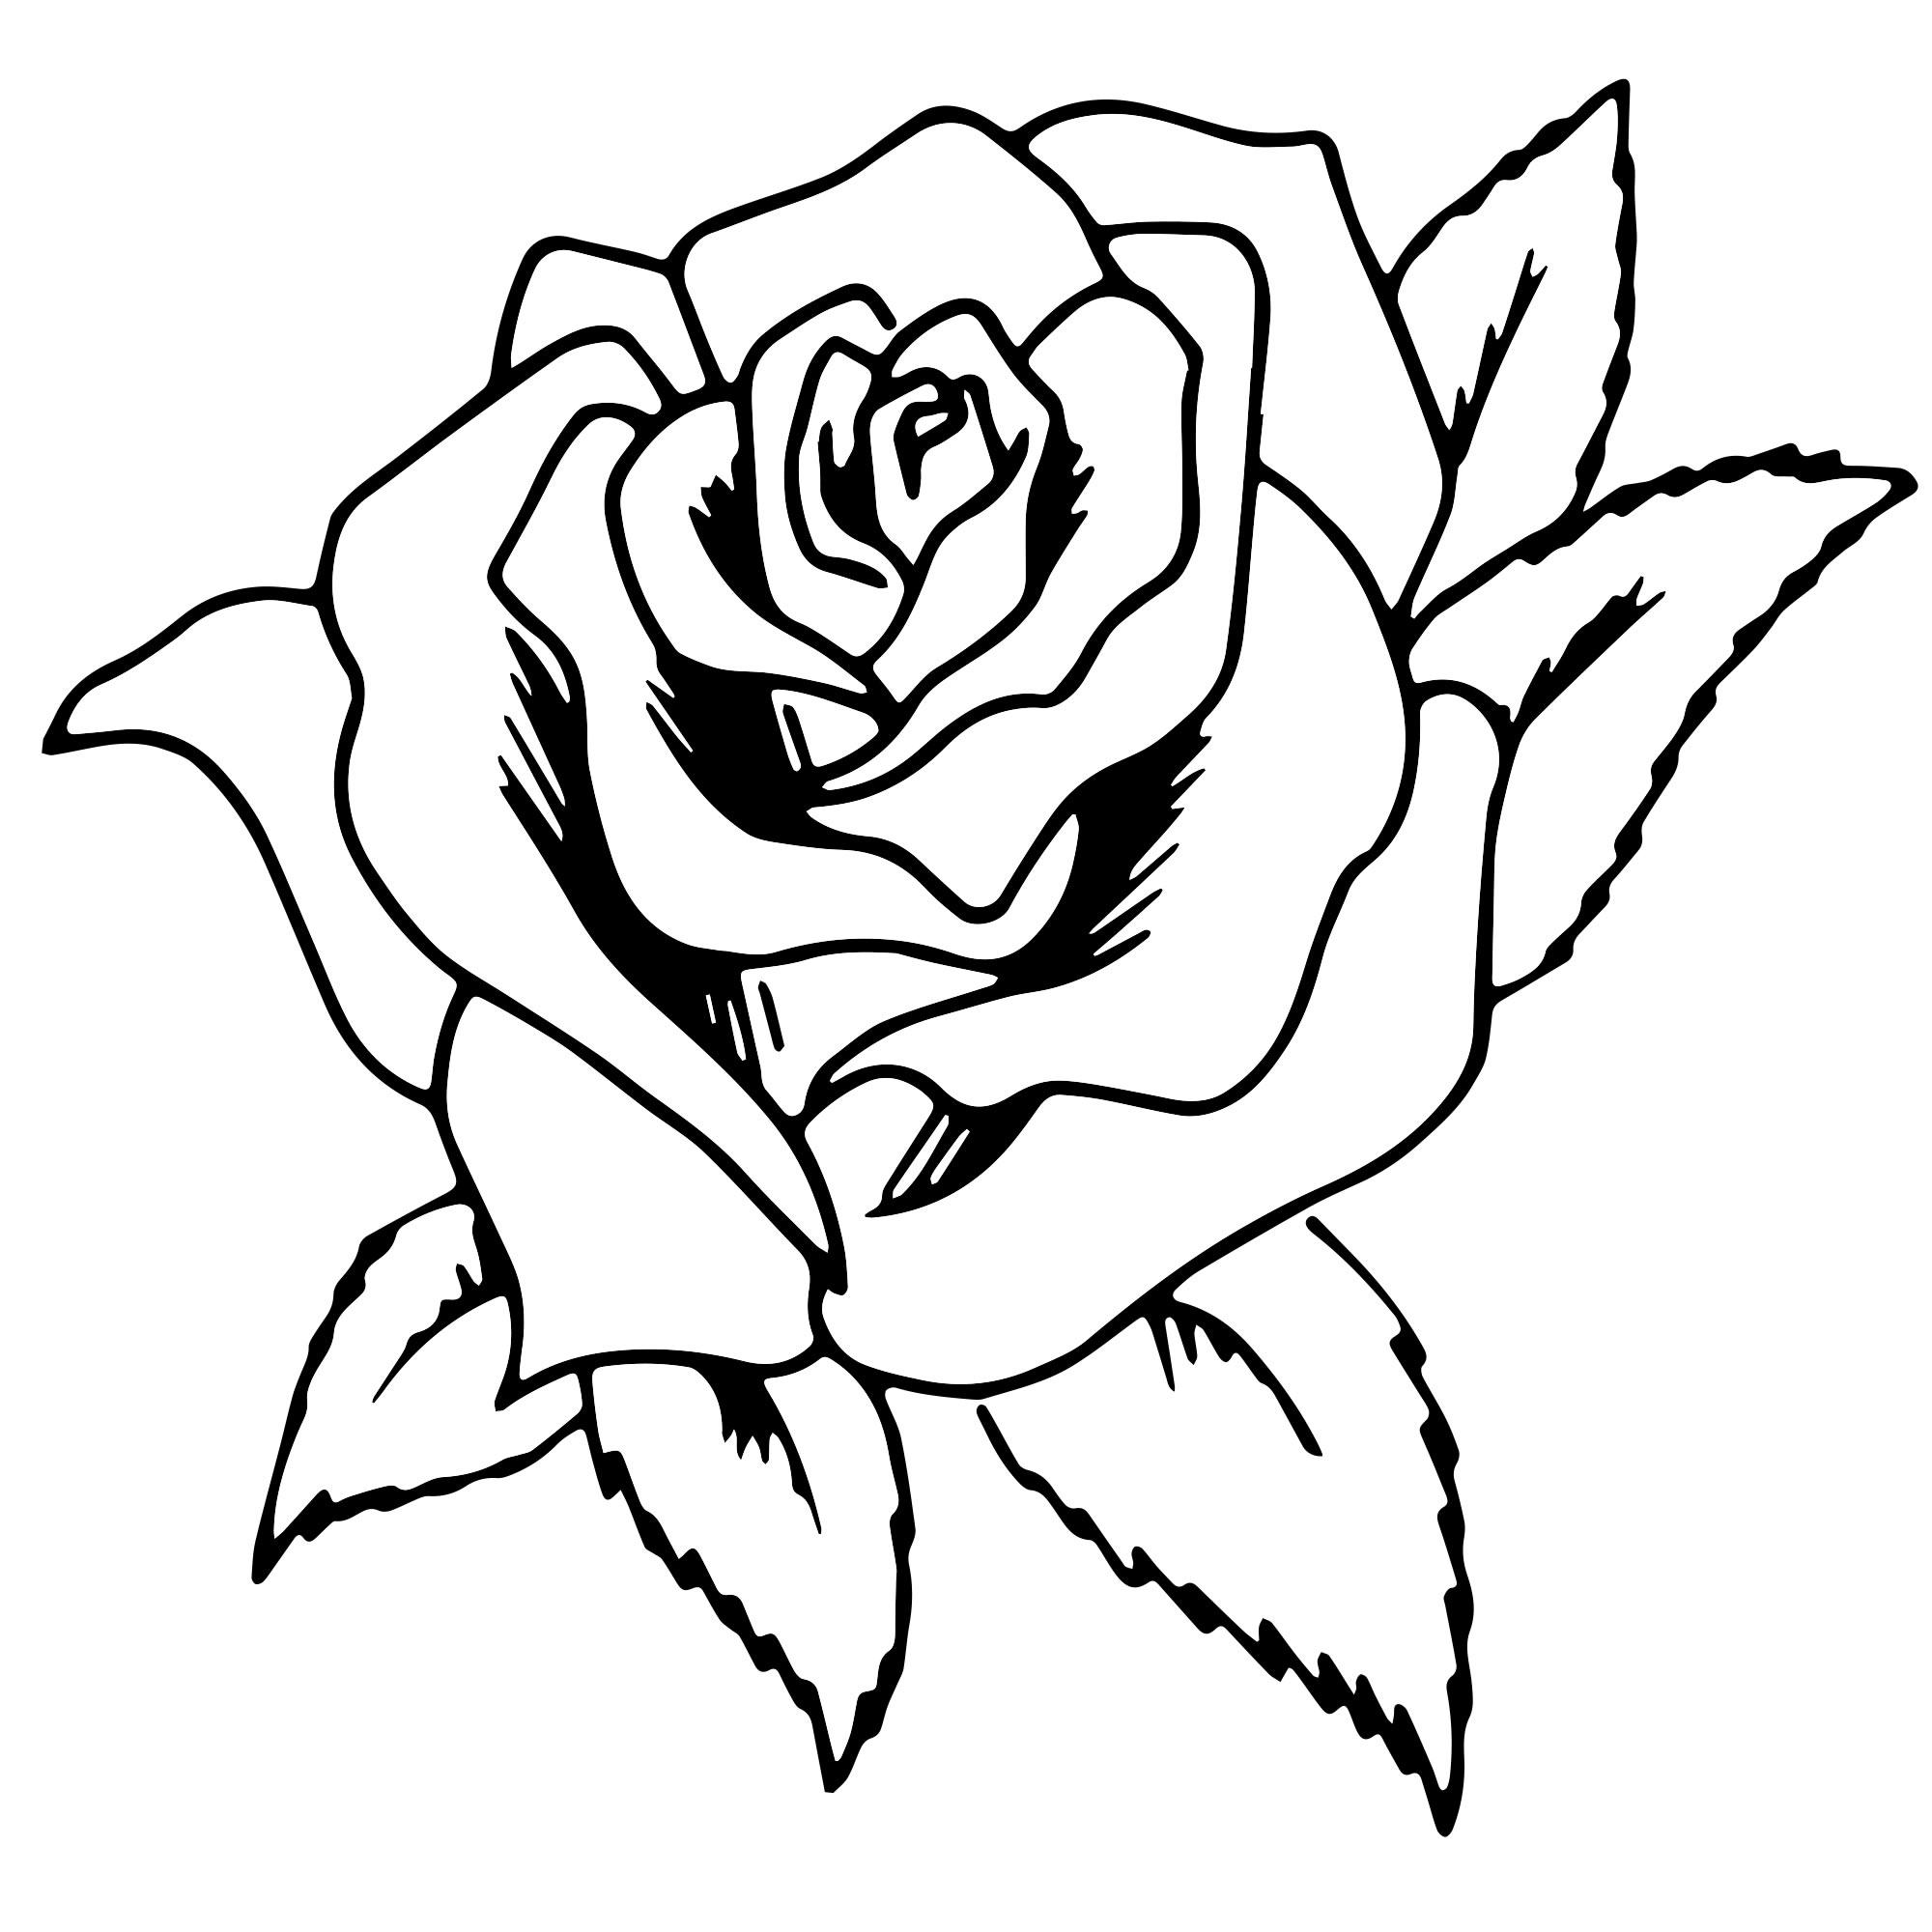 Раскраски Розы распечатать или скачать | Детские раскраски